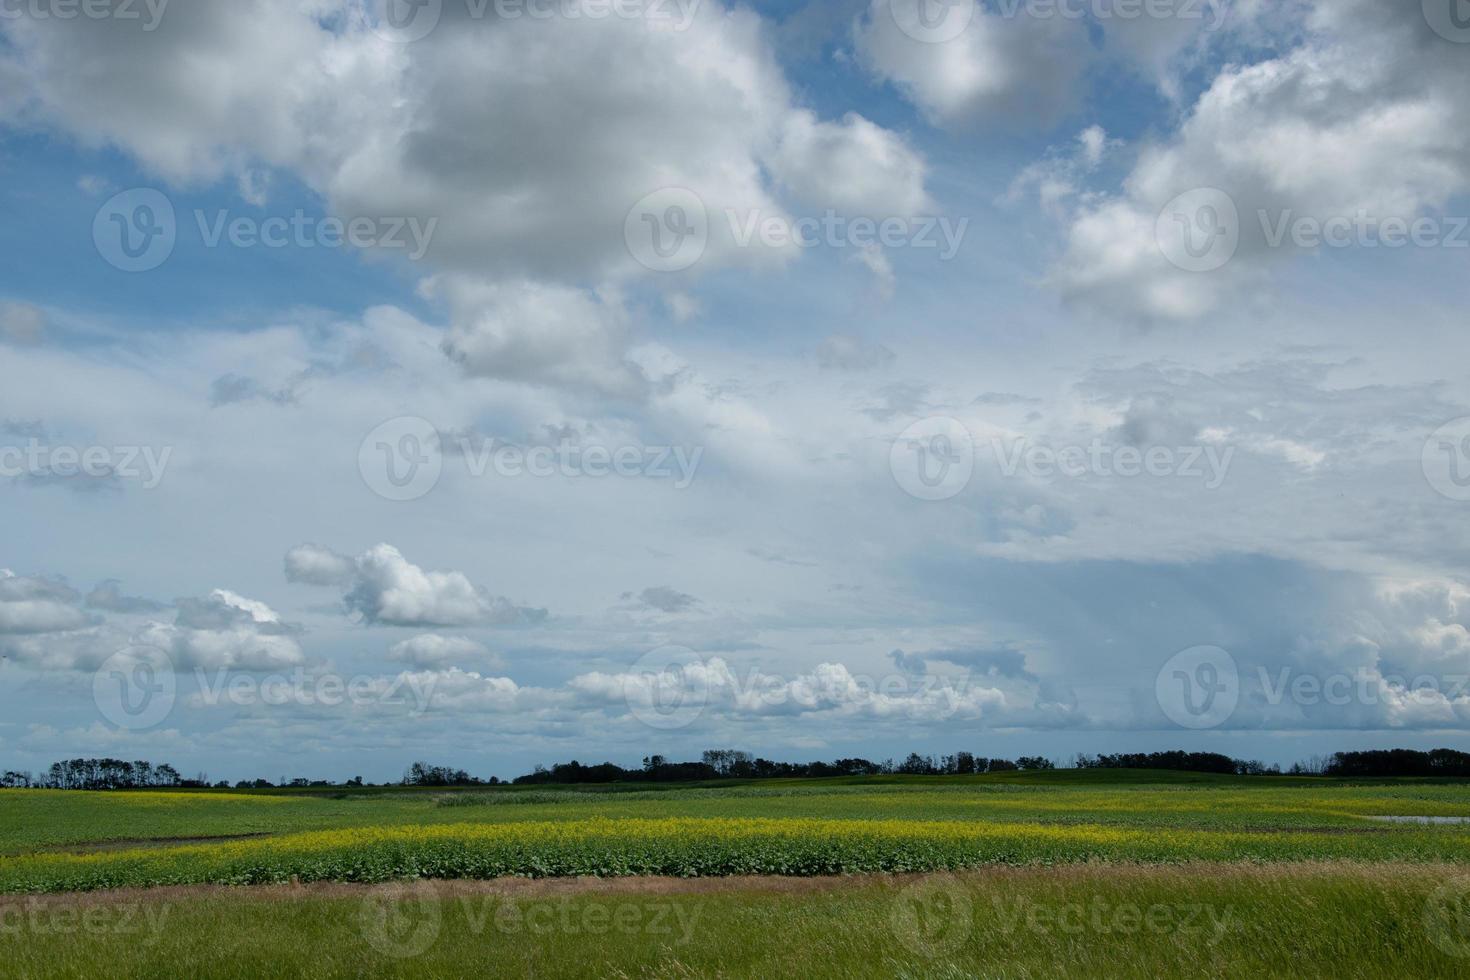 terras agrícolas ao norte de churchbridge, leste de saskatchewan, canadá. foto